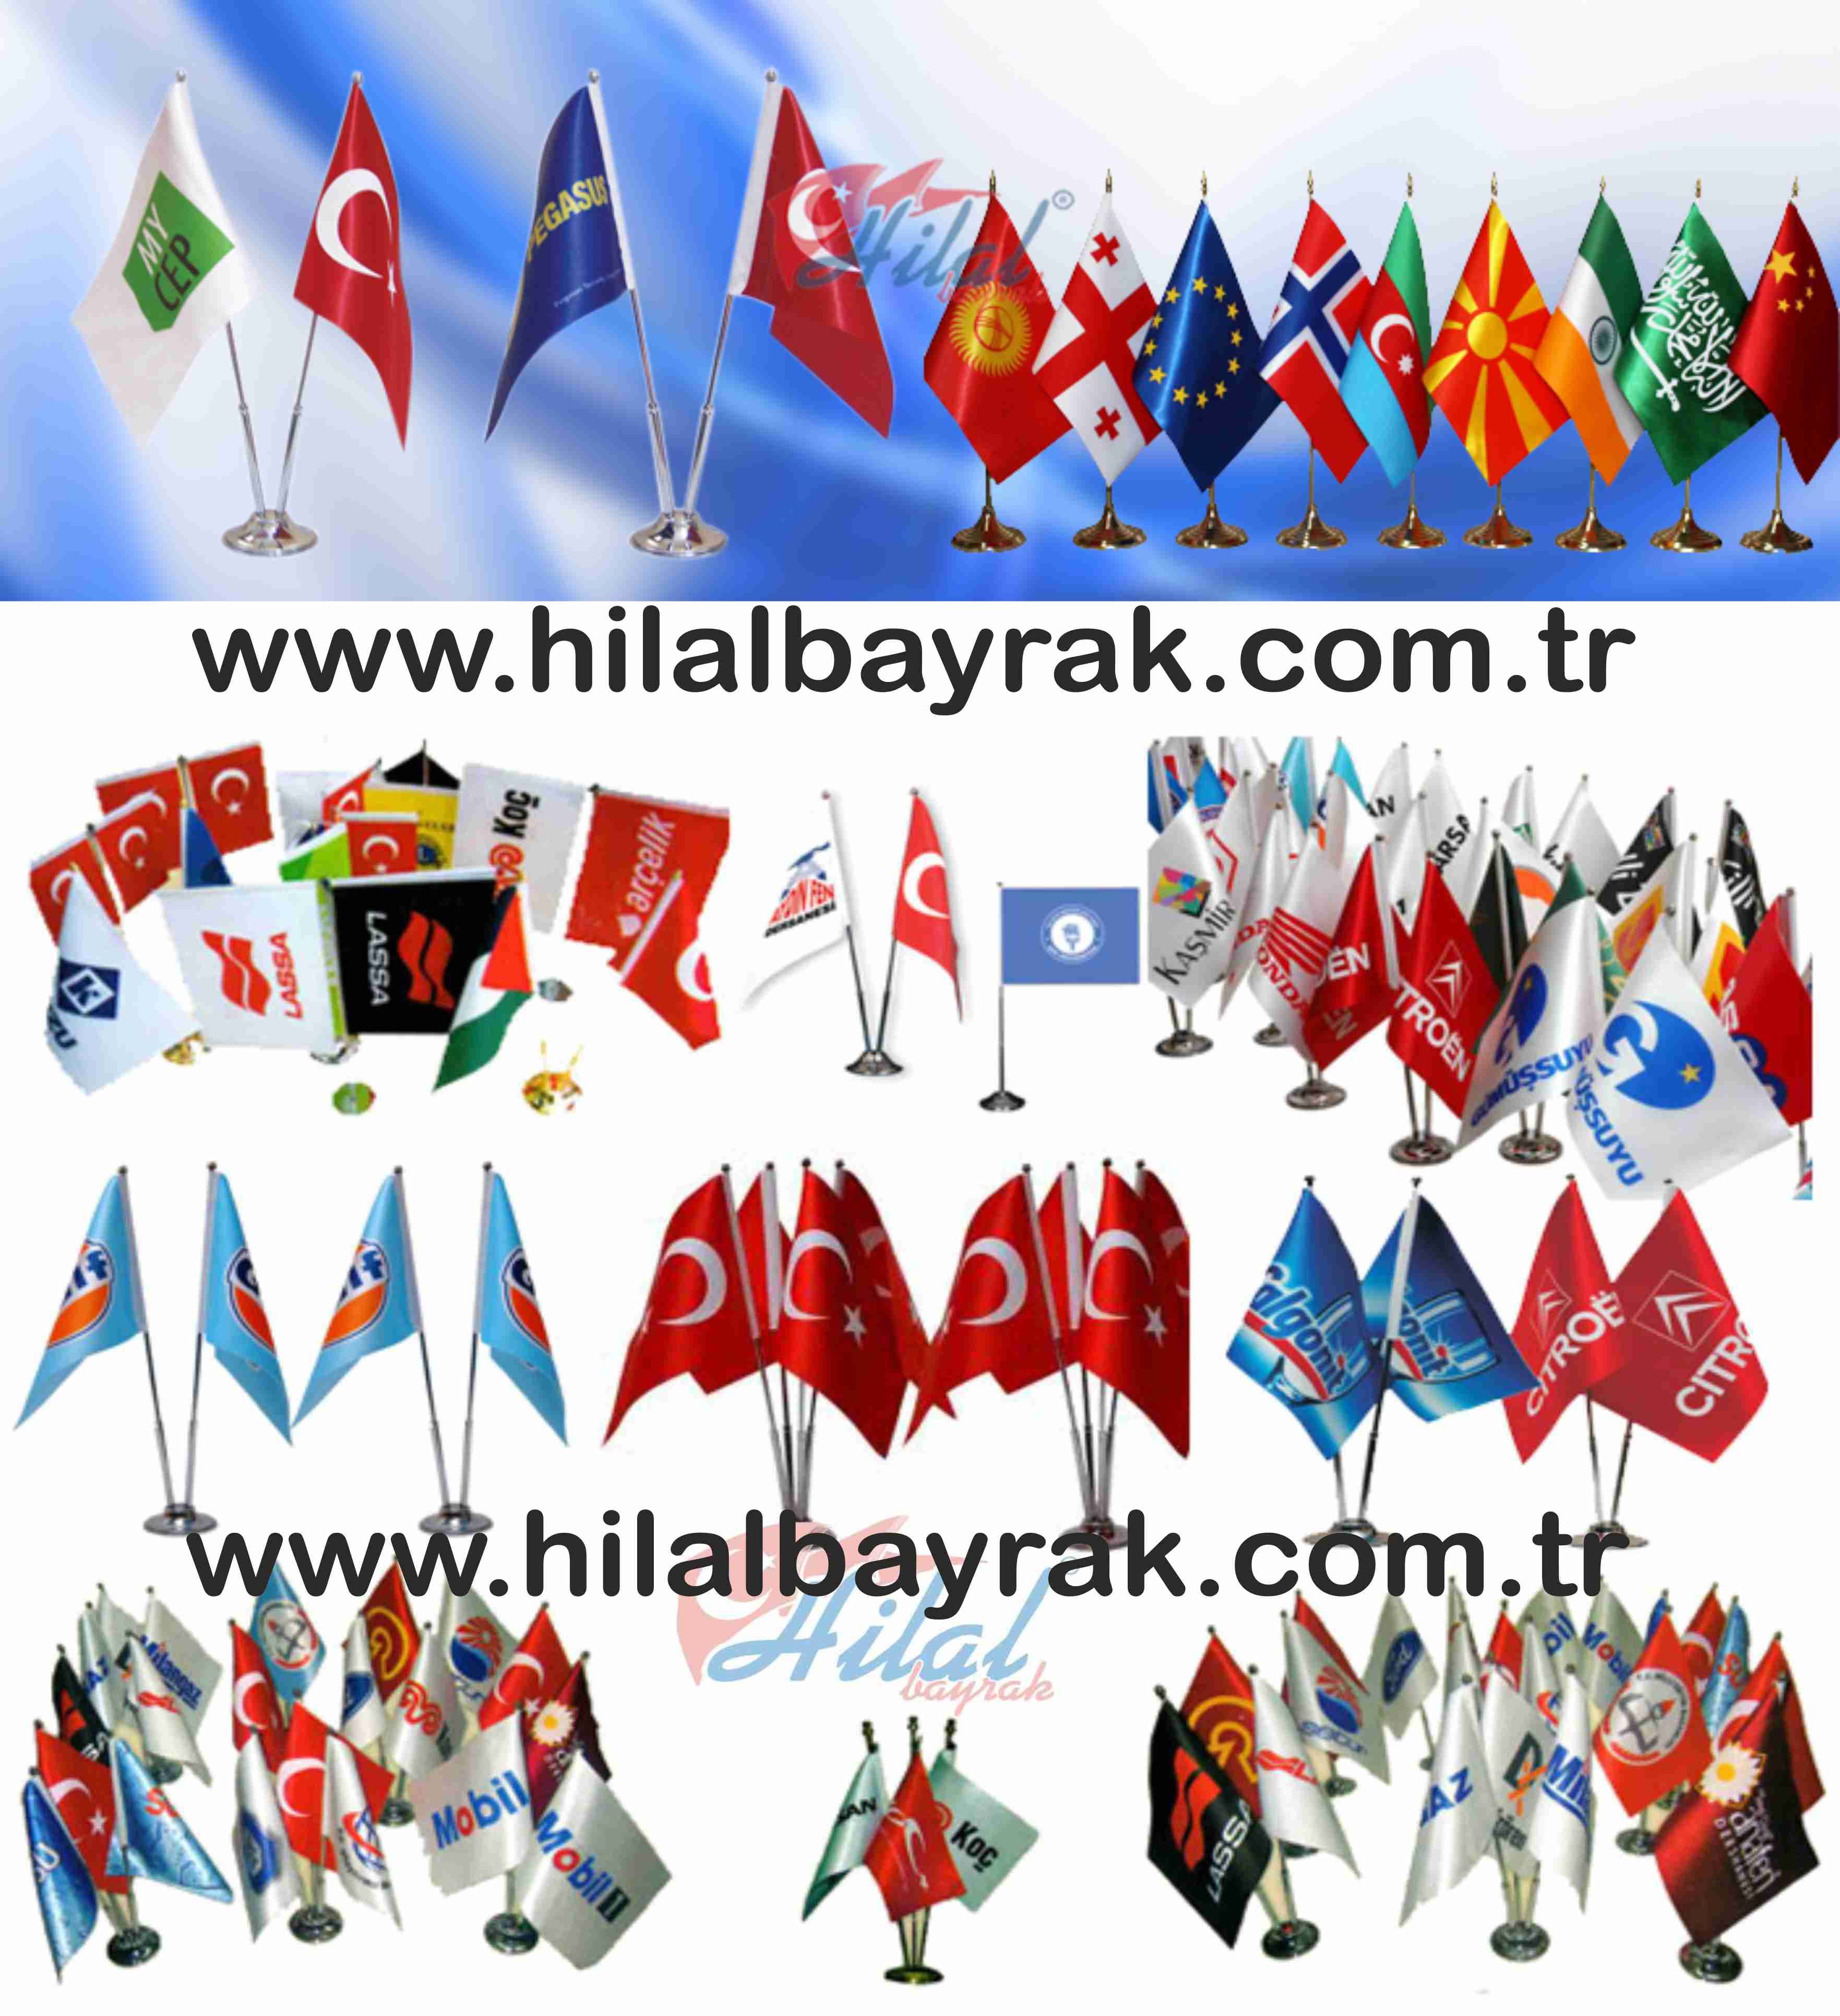 Masa Bayrak satışı, Kadıköy İstanbul, masa bayrak, satışı, masa bayrak Ümraniye, masa bayrak imalatı, acil masa bayrağı, masa bayrakları, masa bayrak ümraniye, burada satışı 7.24 SAAT AÇIK HİZMET